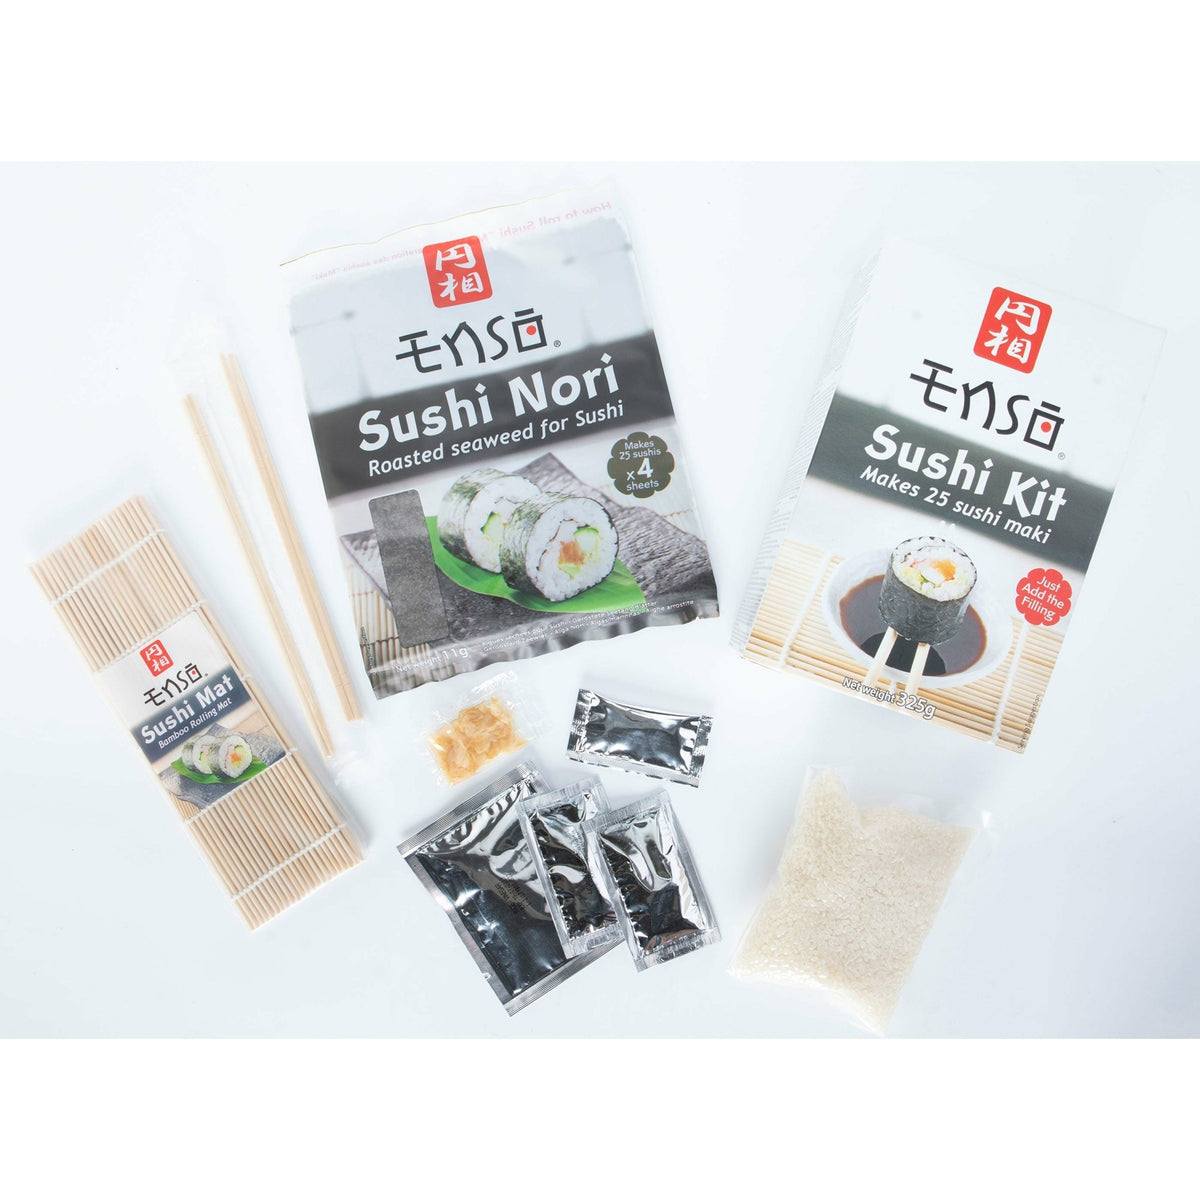 http://siam.recipes/cdn/shop/products/sushi-kit-325g-726374_1200x1200.jpg?v=1697794957